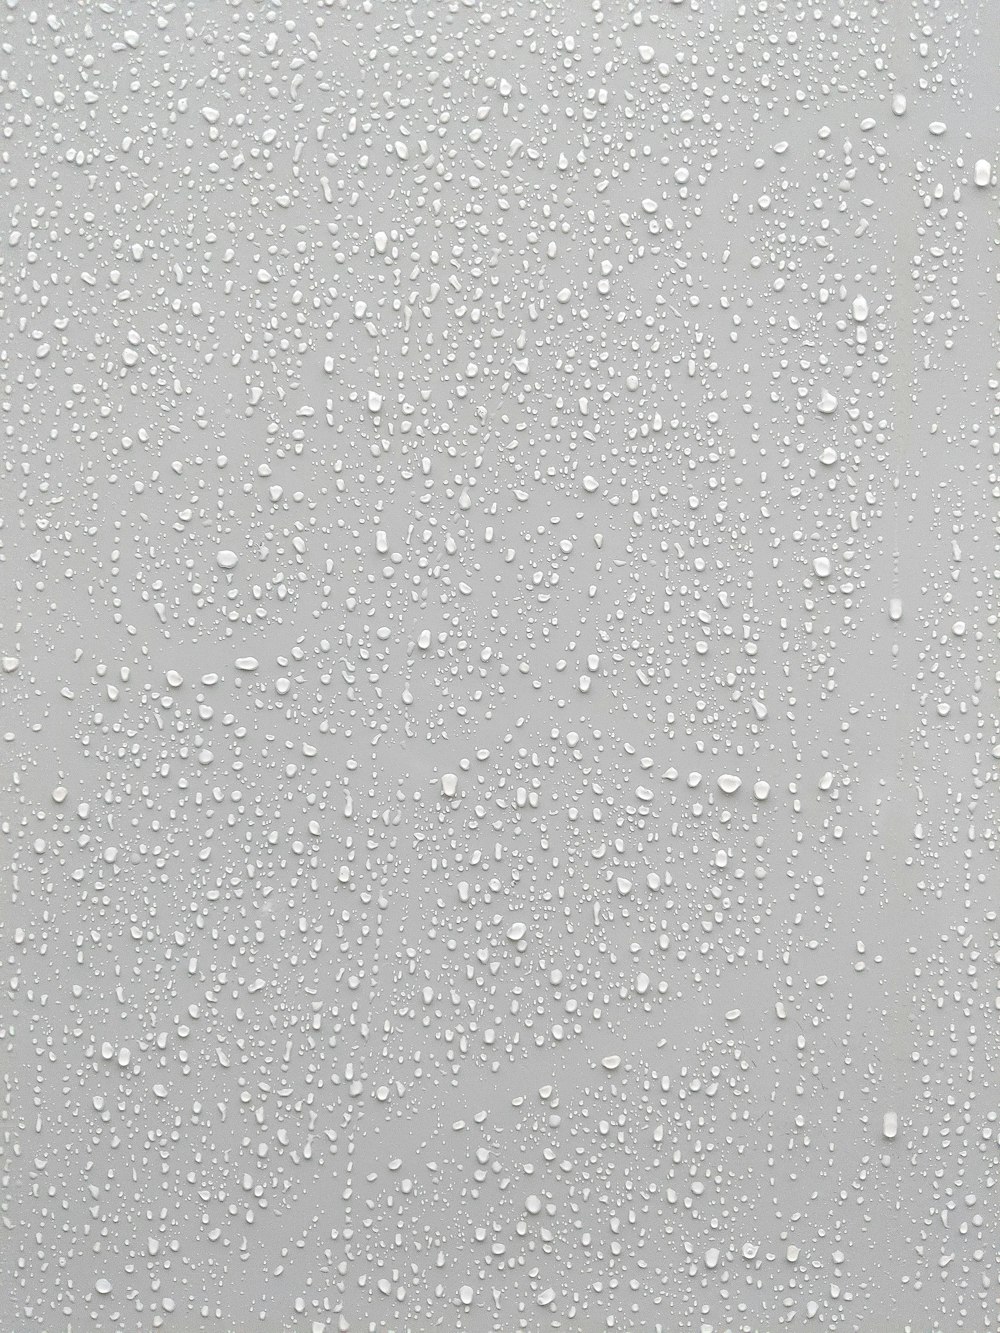 gouttes d’eau sur une surface vitrée avec un fond blanc